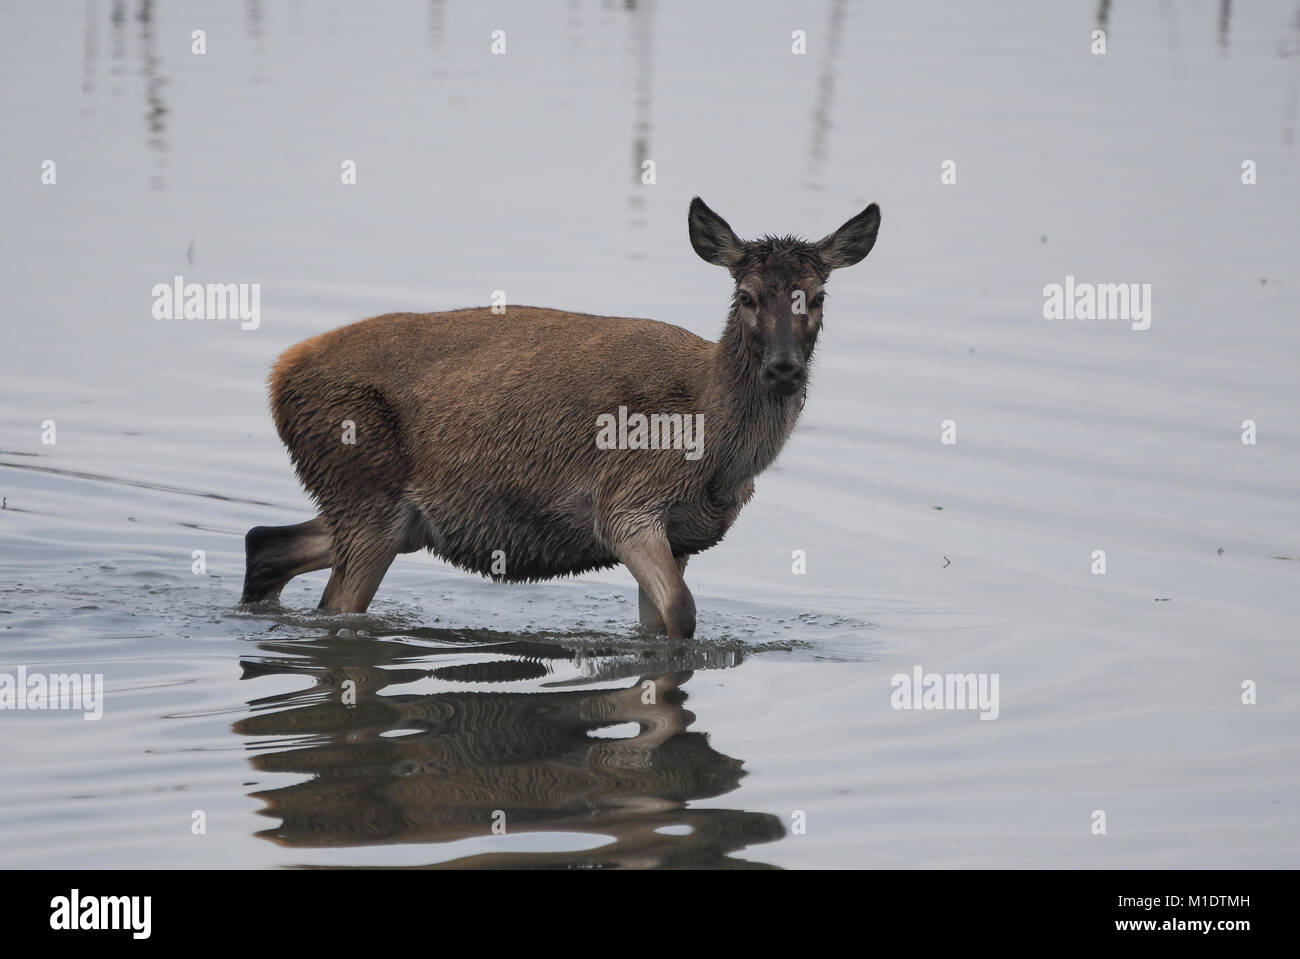 closeup of deer among reeds Stock Photo